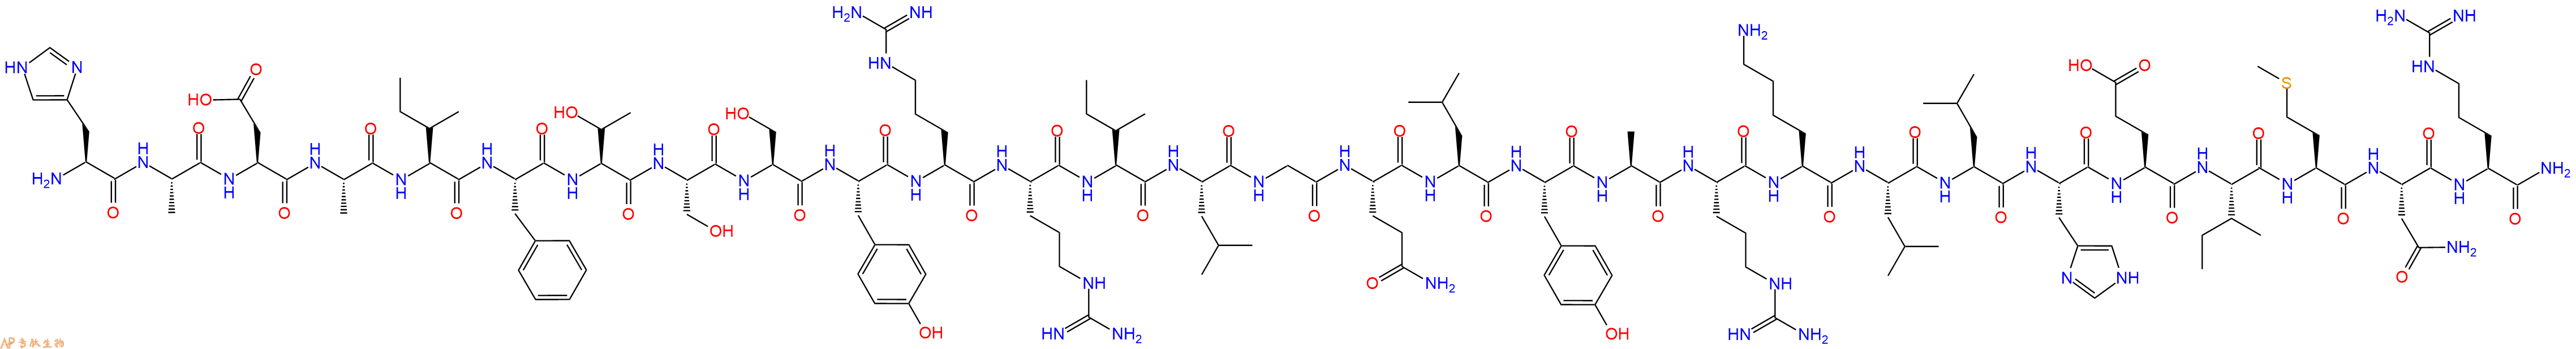 专肽生物产品生长激素片段肽GRF (1-29) amide (rat)91826-20-9